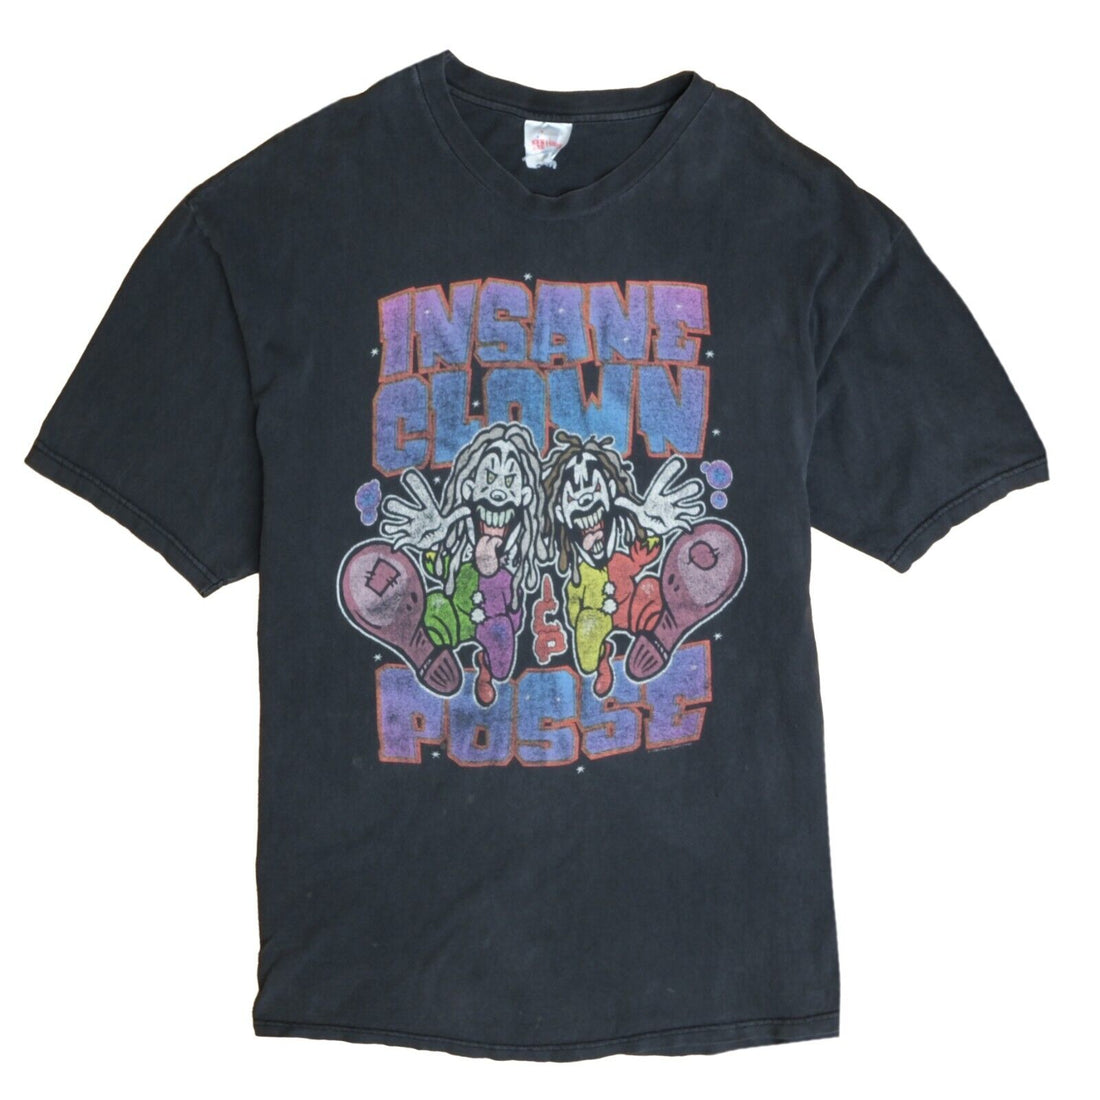 Vintage Insane Clown Posse T-Shirt Size XL Black Hip Hop Tee 1998 90s